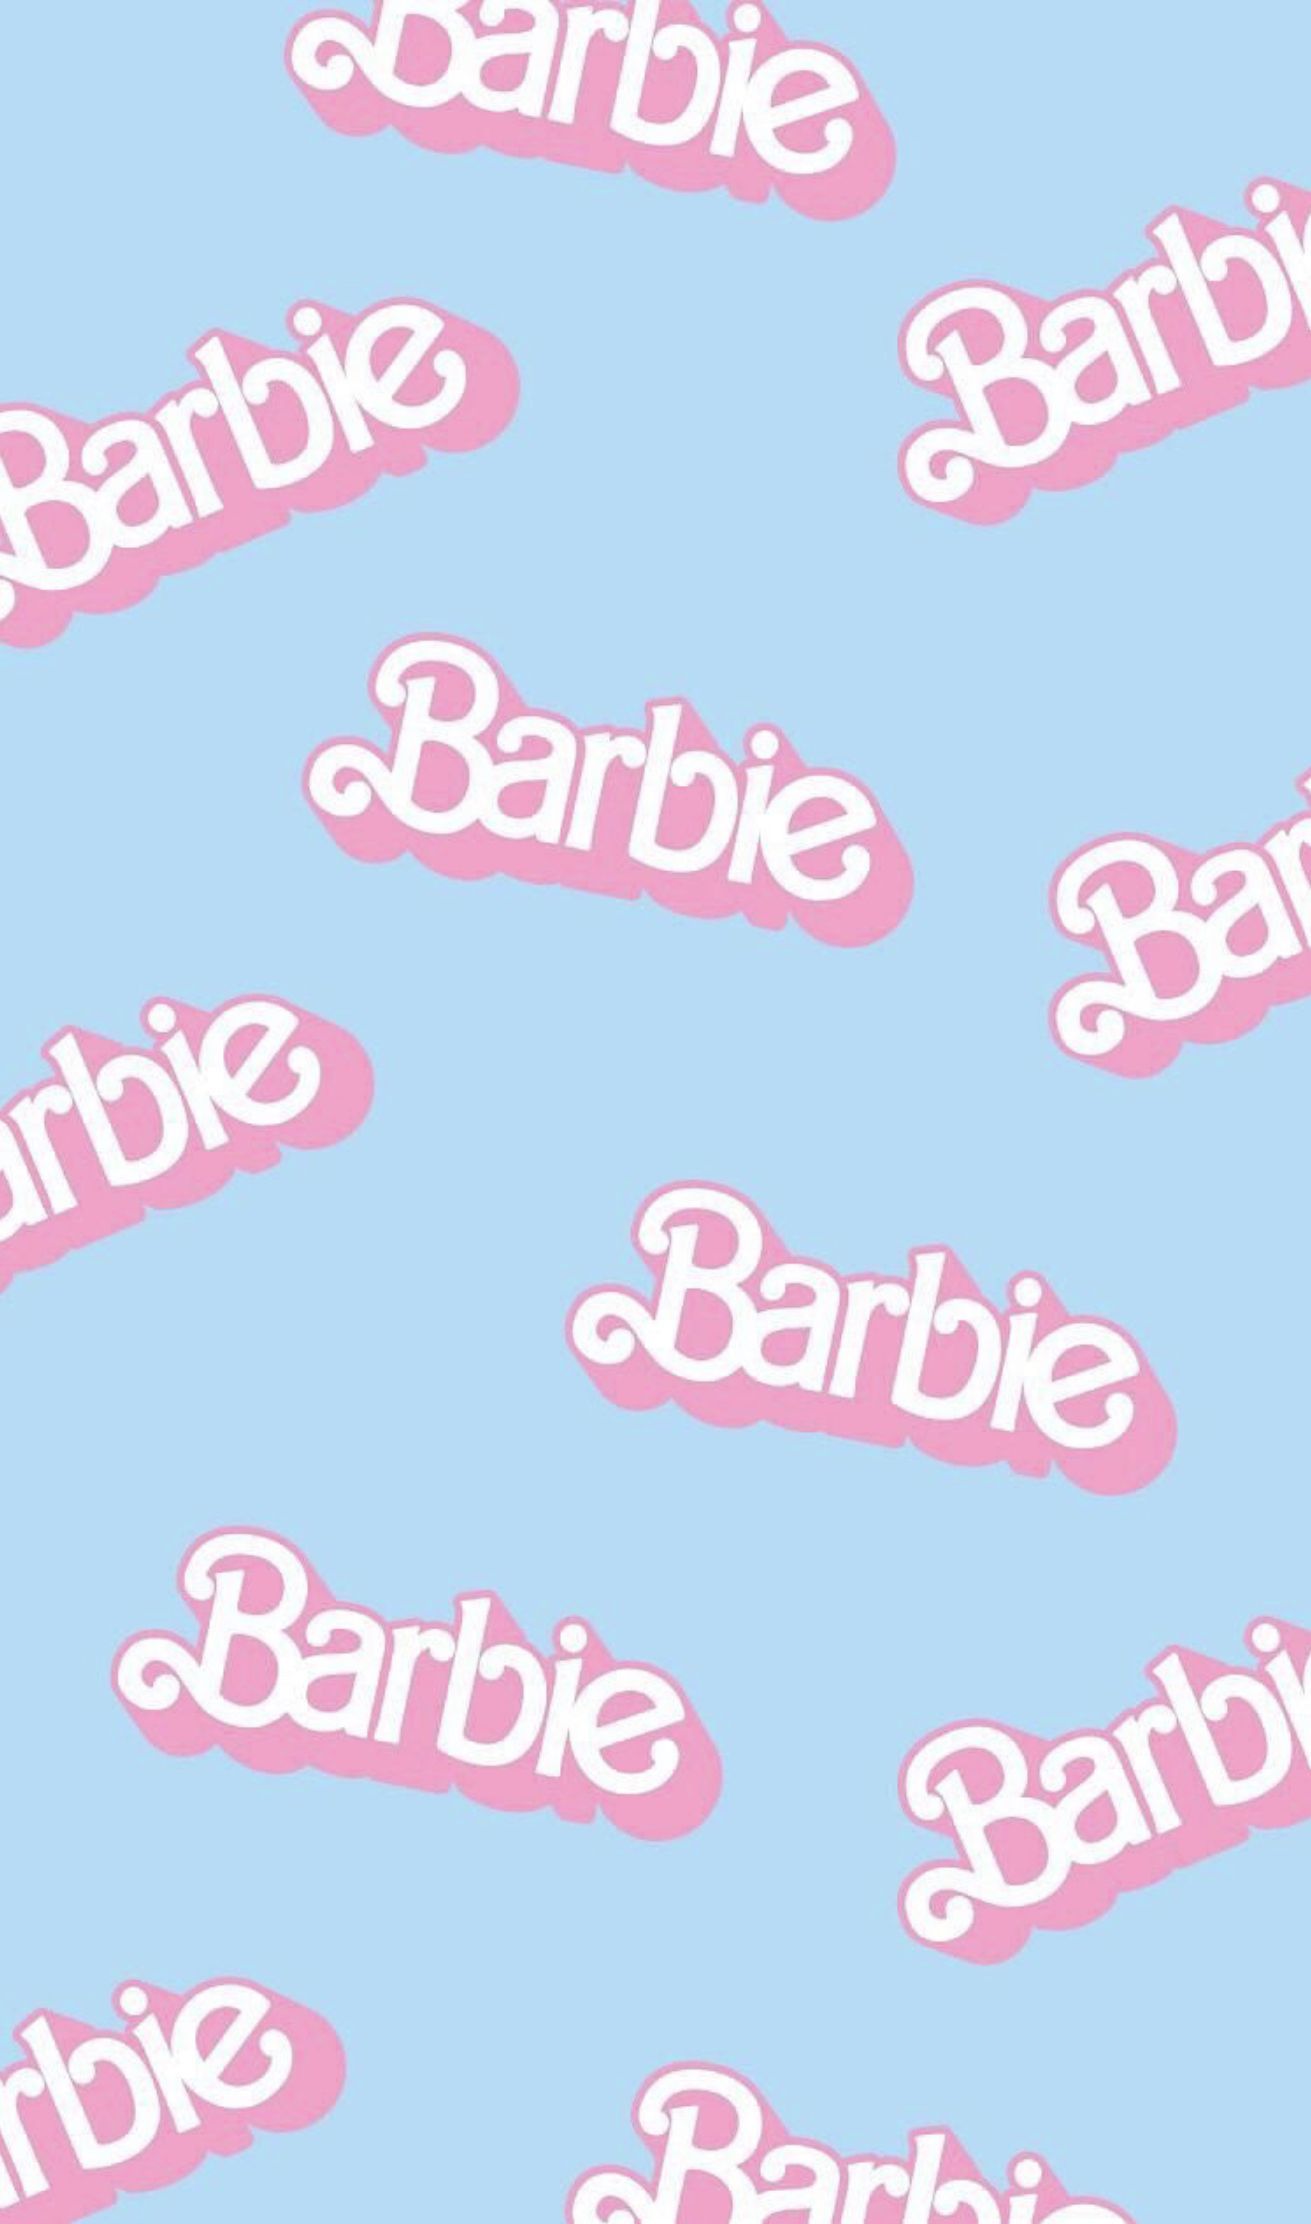 Barbie Baddie Aesthetic Wallpaper